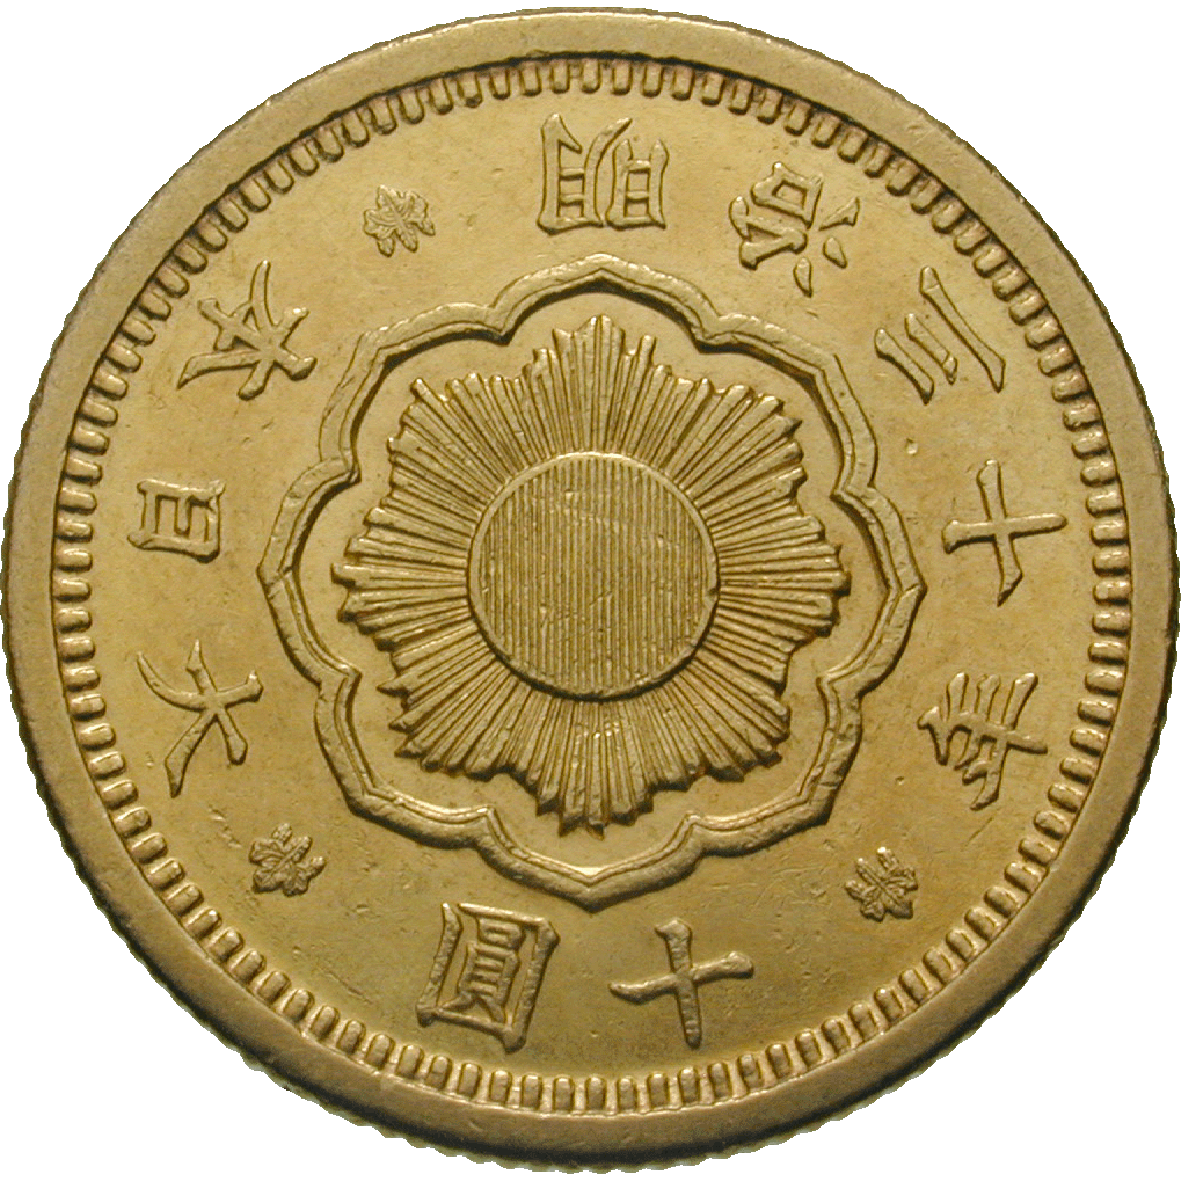 Japanese Empire, Meiji Period, Mutsuhito, 10 Yen 1897 (reverse)